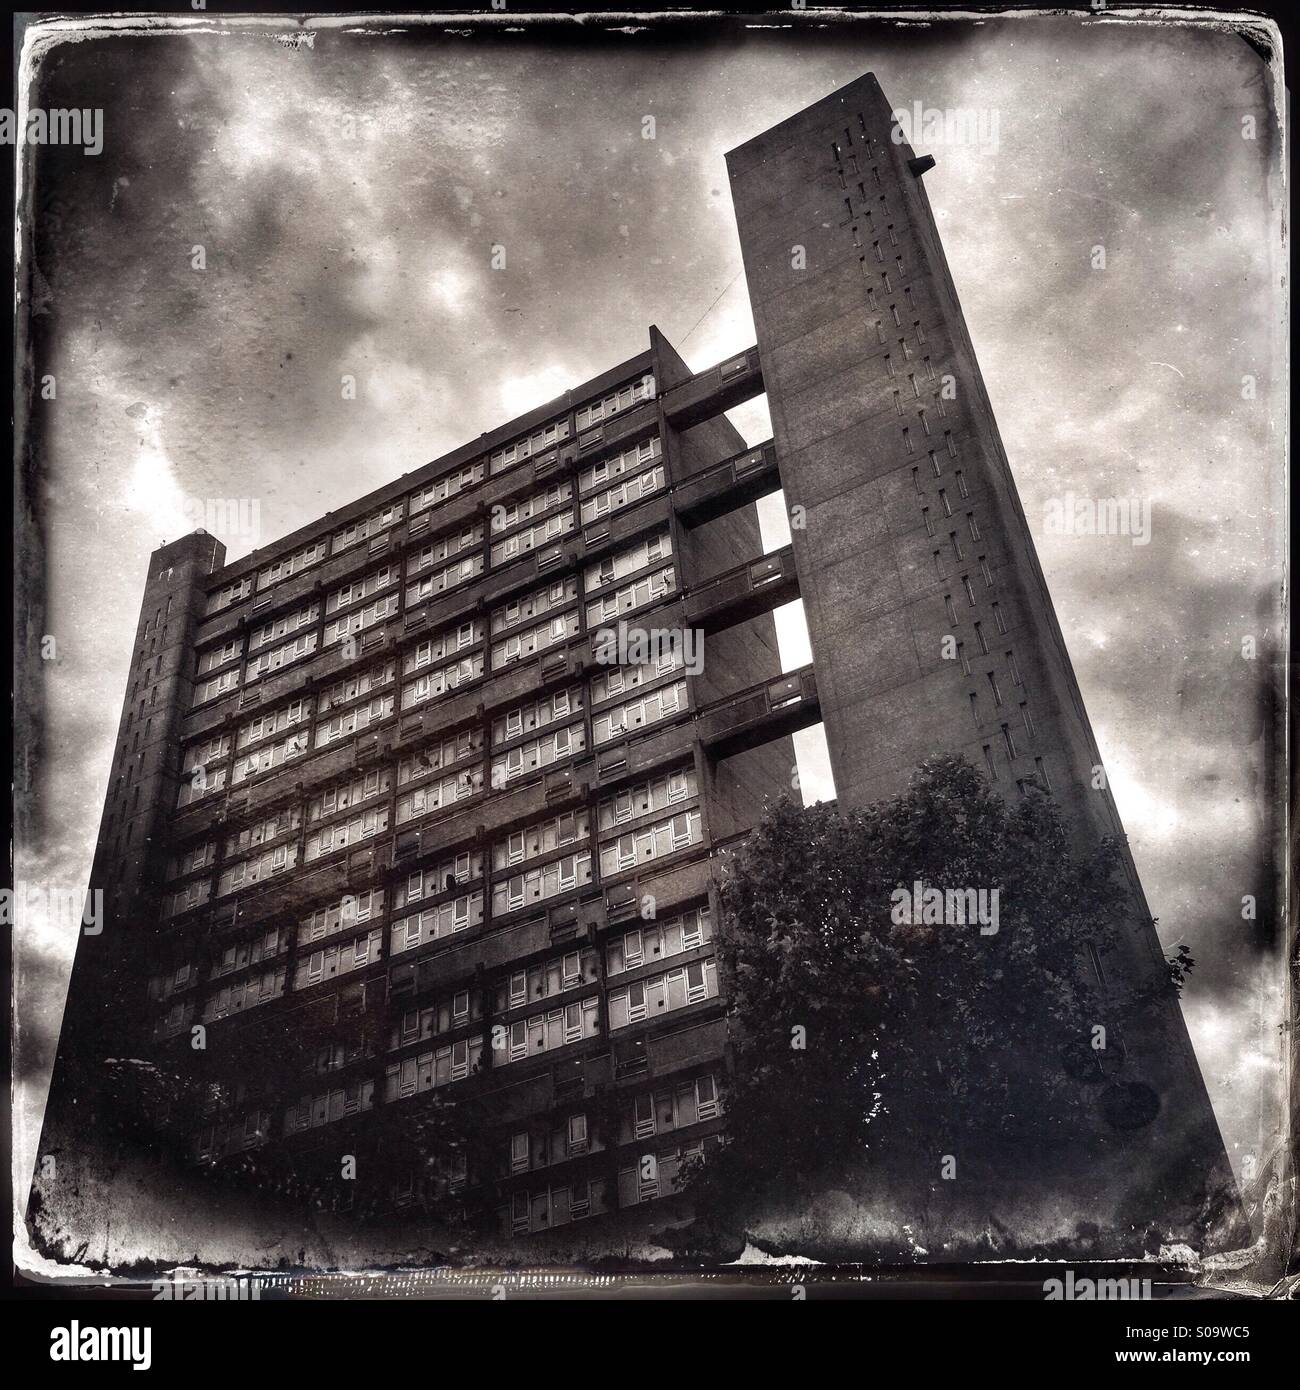 Vintage-Stil Foto des Balfron Tower an einem bewölkten Tag in Pappel, East London. Das Gebäude wurde von dem Architekten Erno Goldfinger, bekannt für seine Brutalismus und modernistischen Designs entworfen. Stockfoto